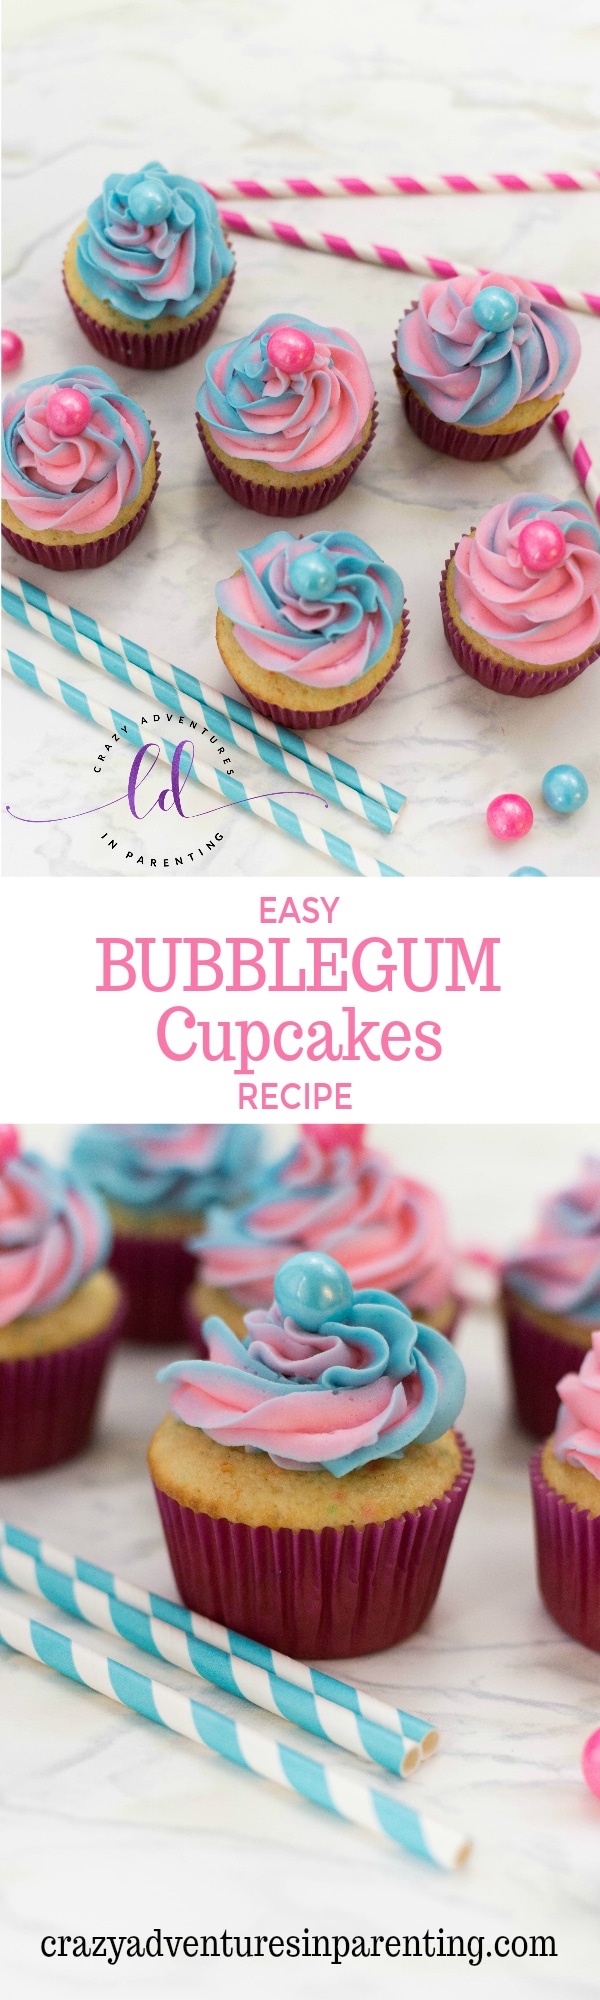 Easy Bubblegum Cupcakes Recipe